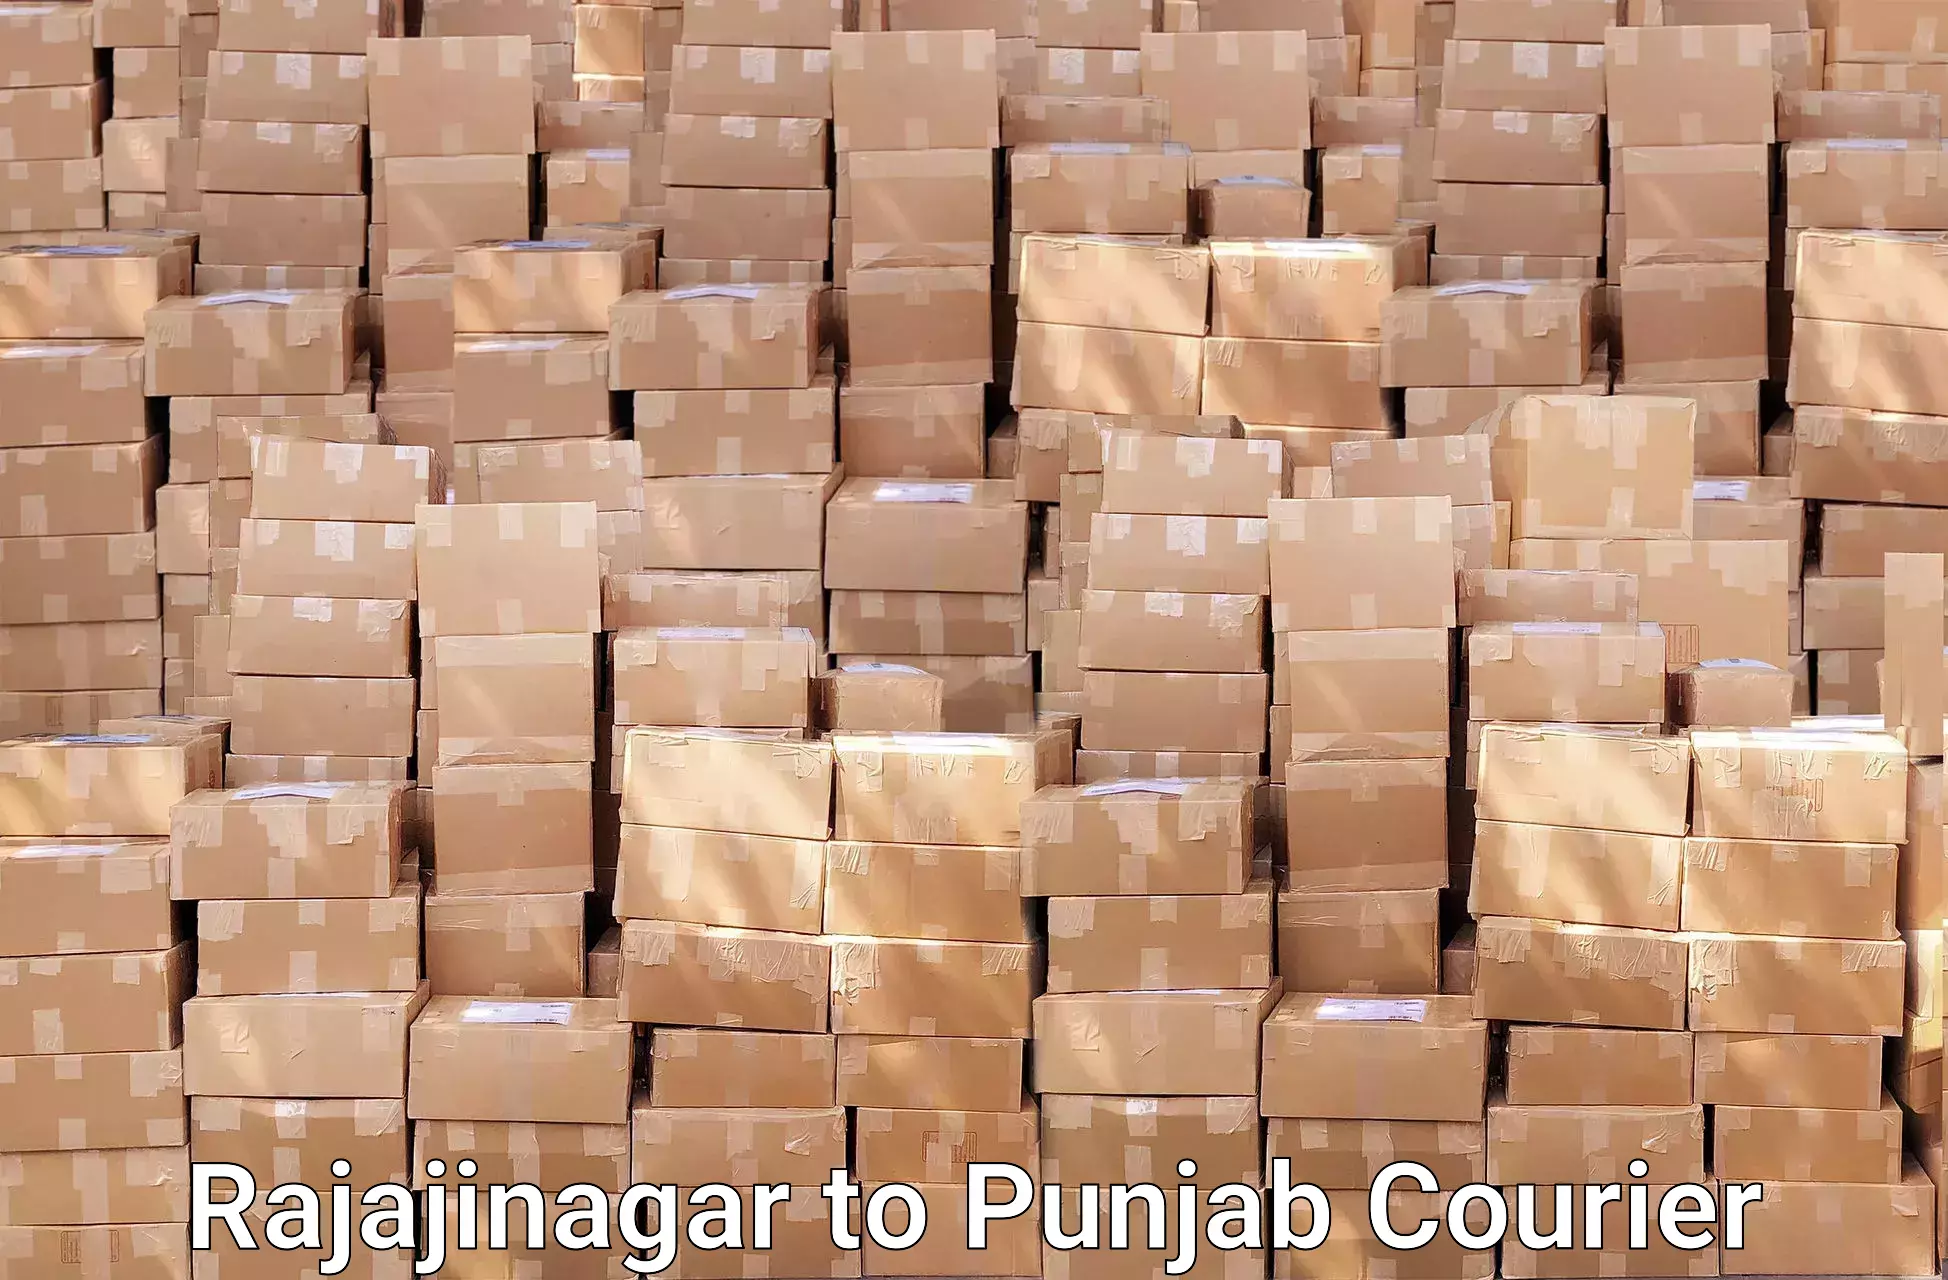 Furniture moving experts in Rajajinagar to Punjab